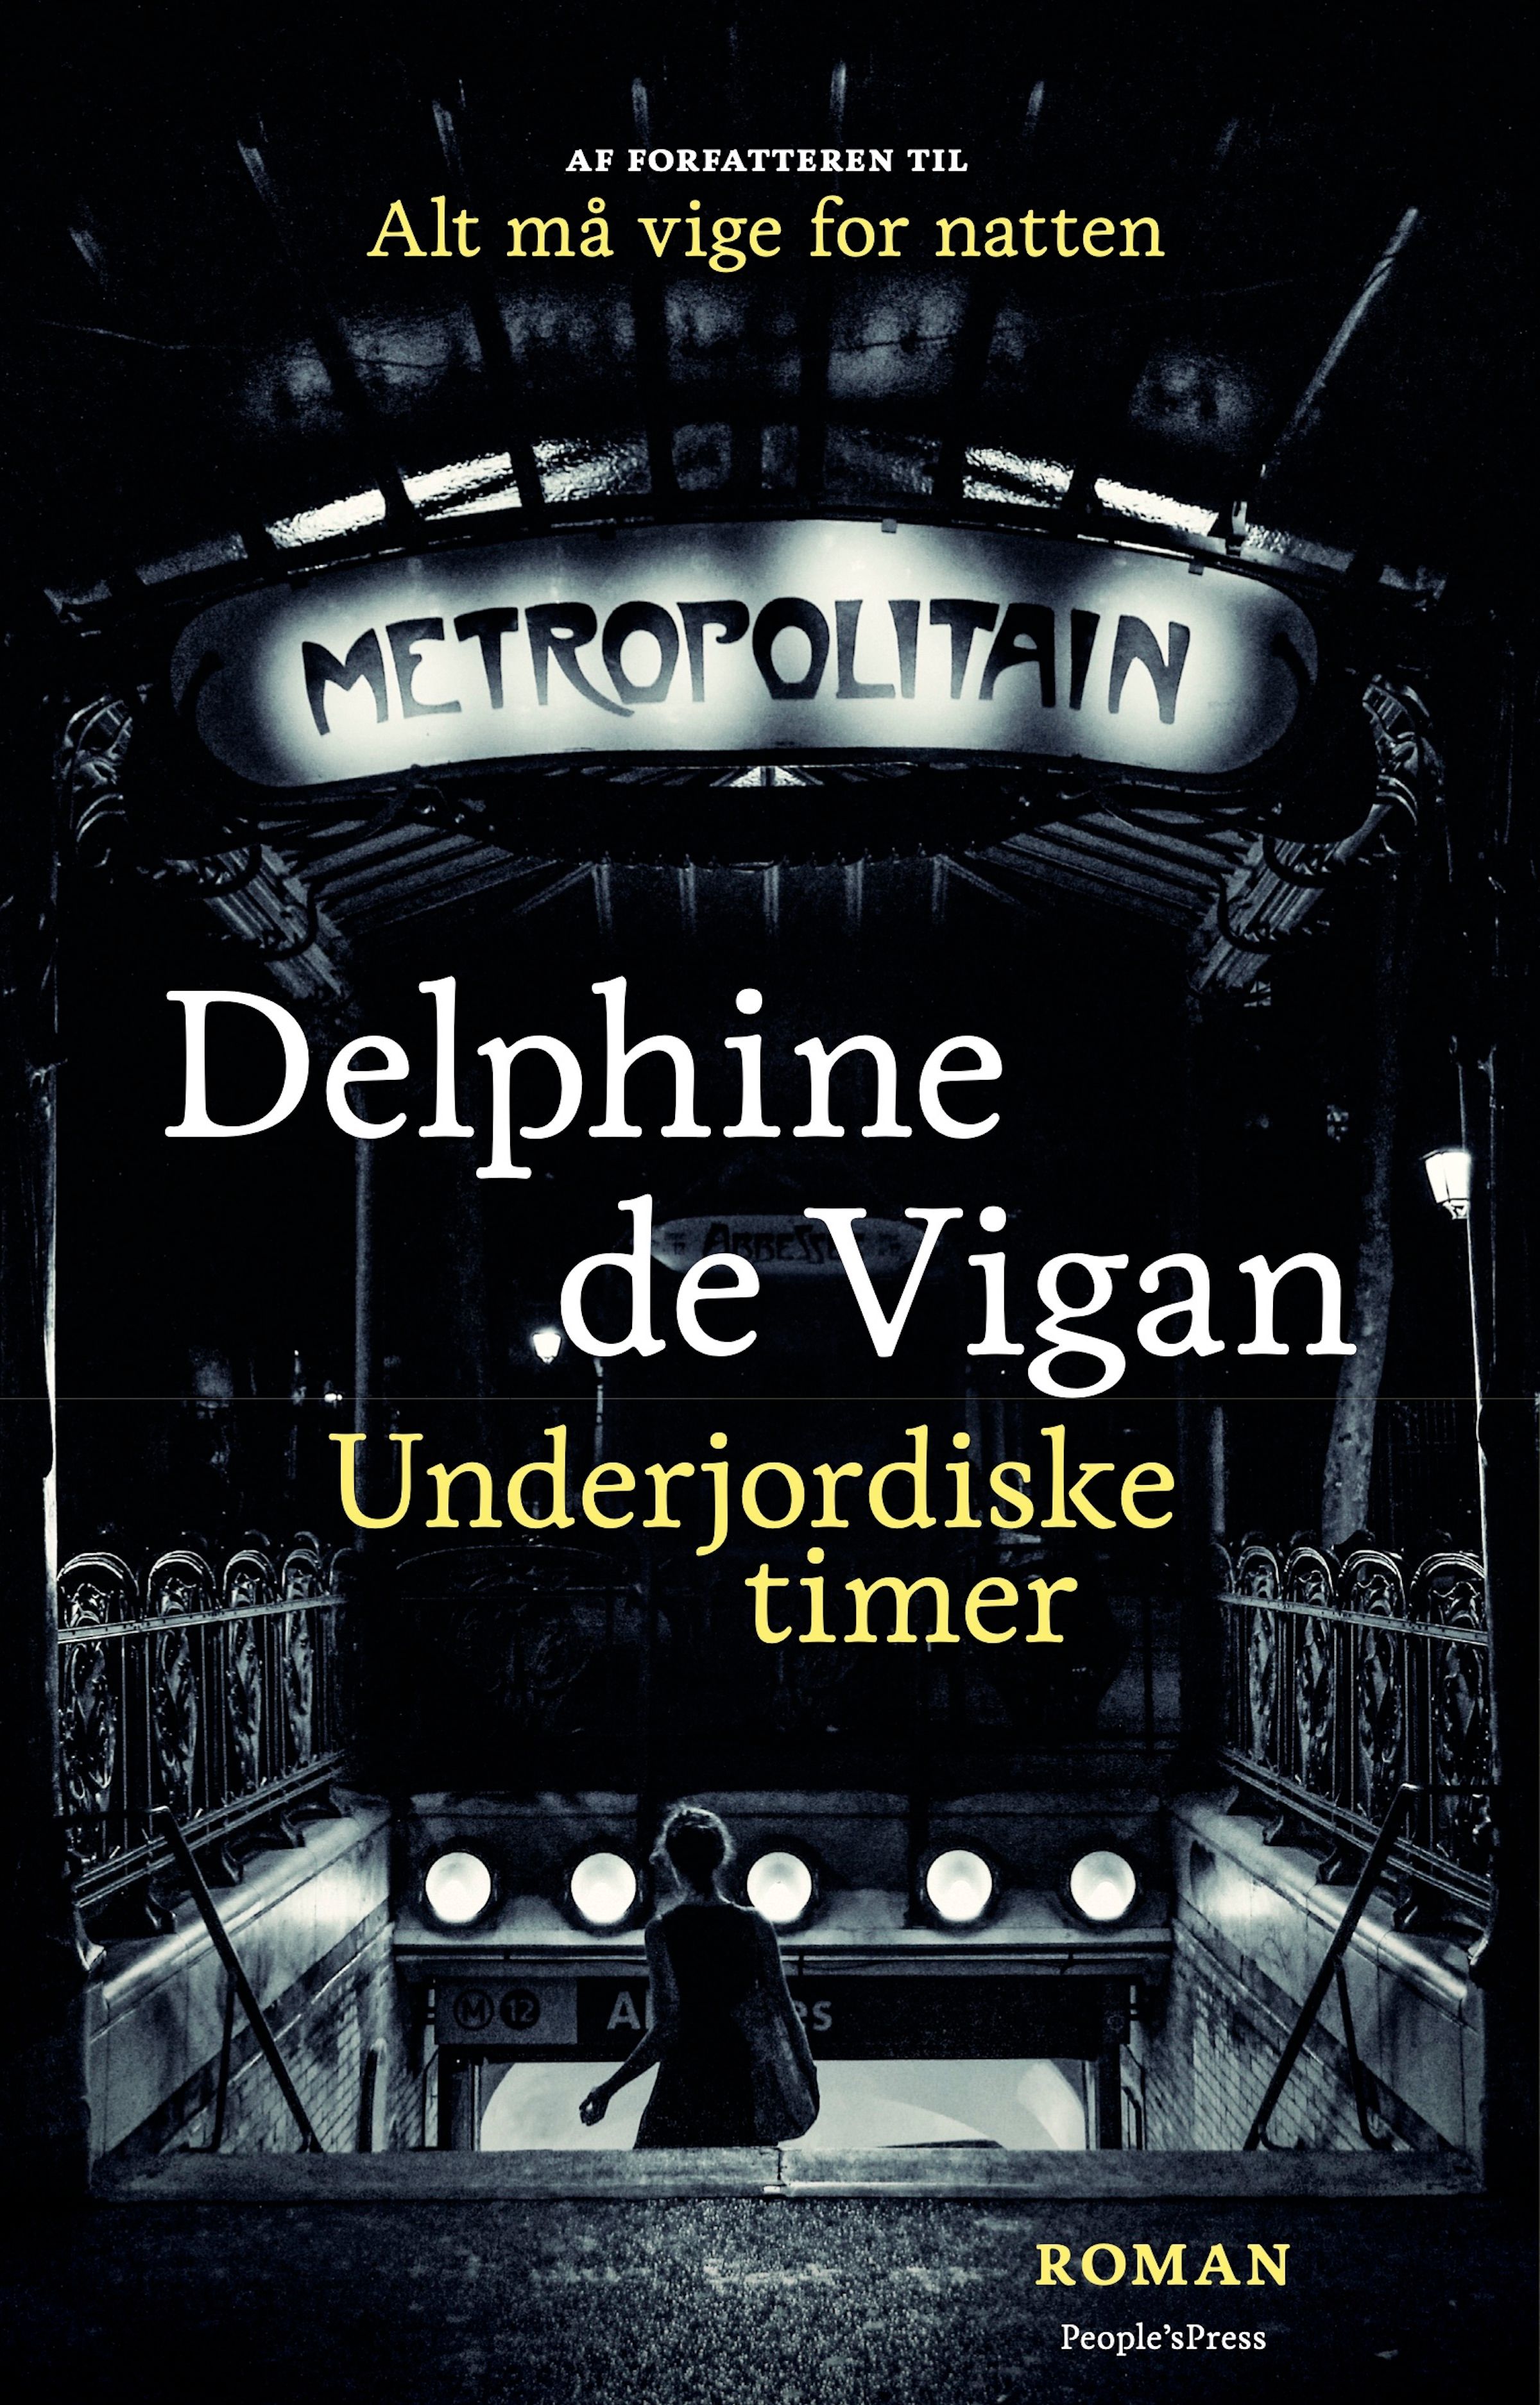 Underjordiske timer, eBook by Delphine De Vigan